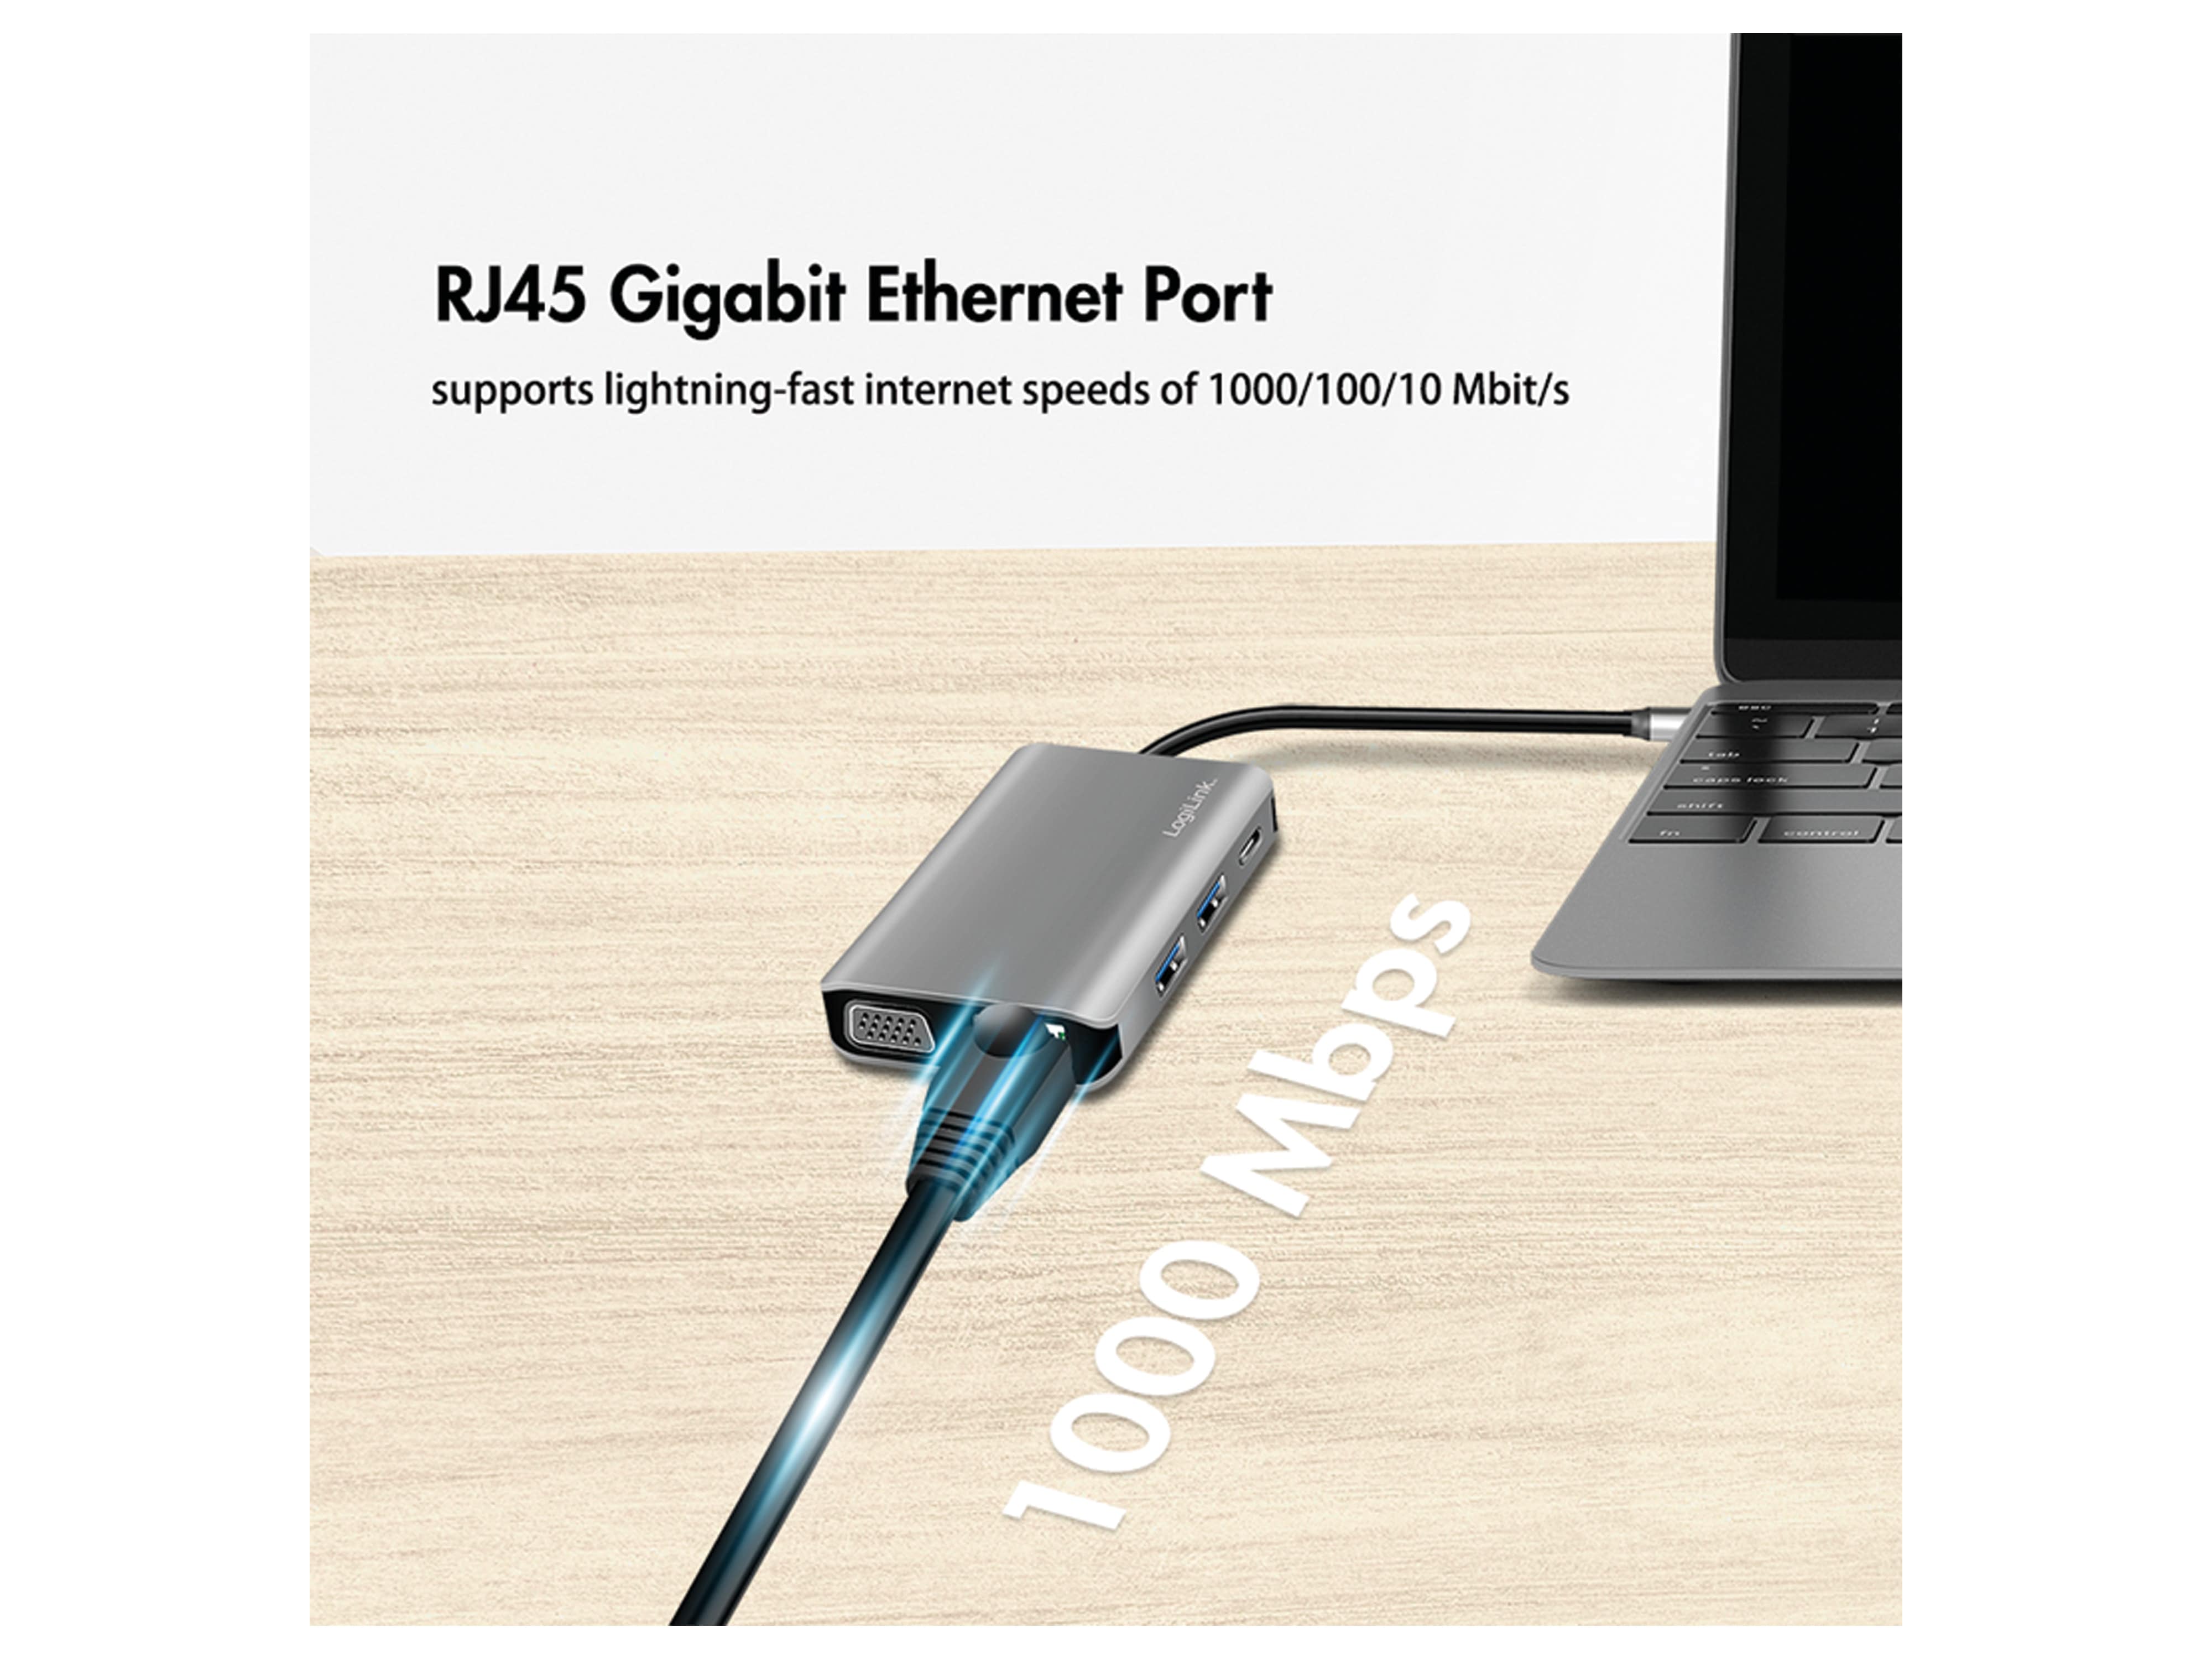 LOGILINK USB 3.2 Dockingstation UA0410, Gen1, 7-Port, USB-C PD, Anthrazit